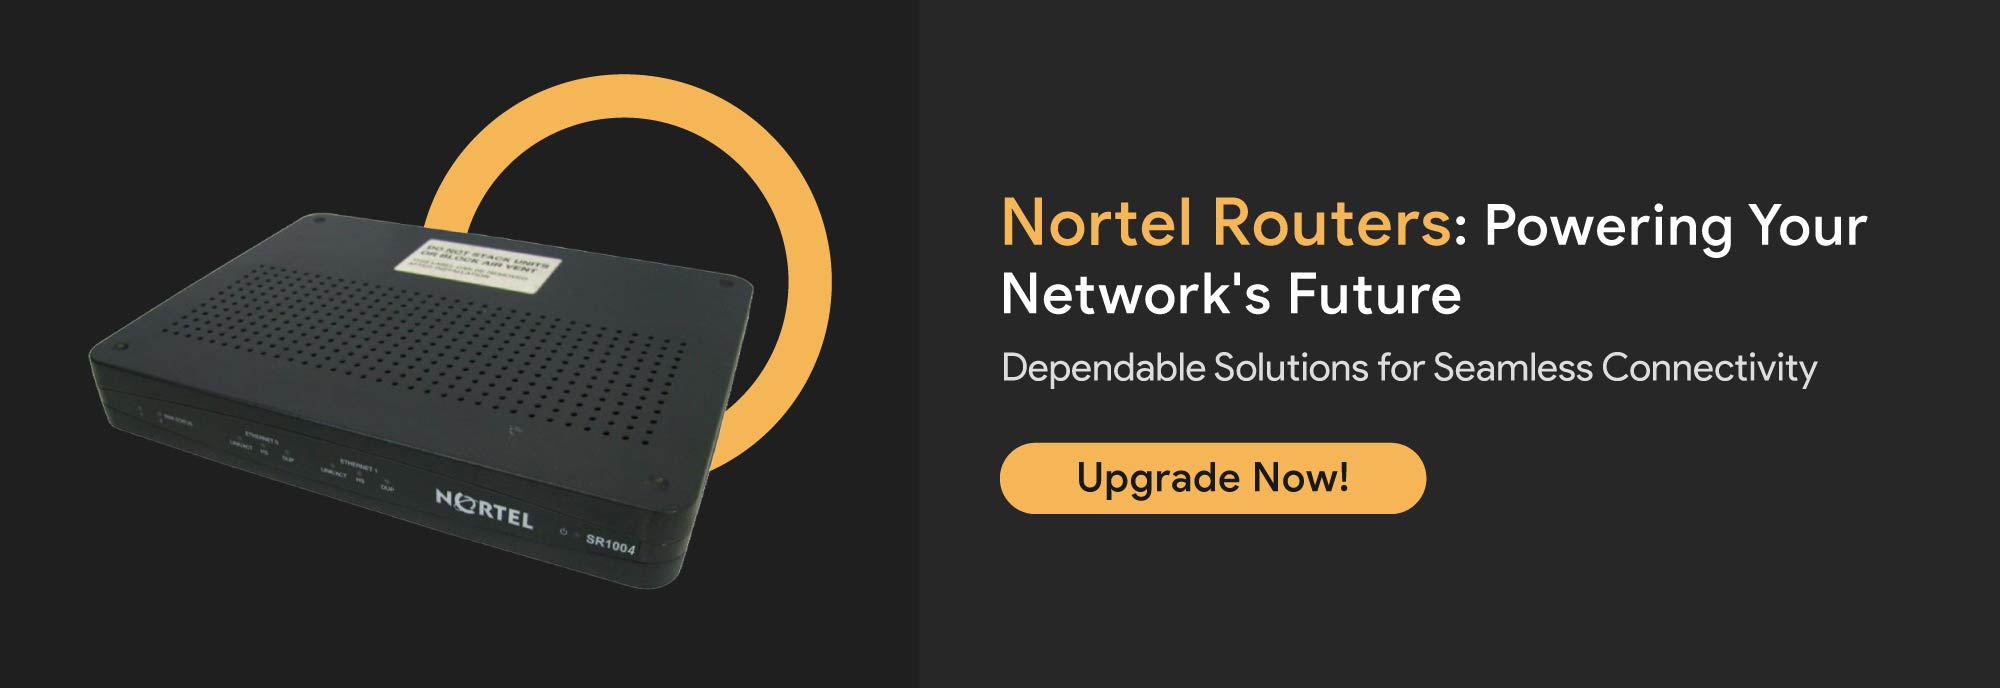 Nortel-Routers